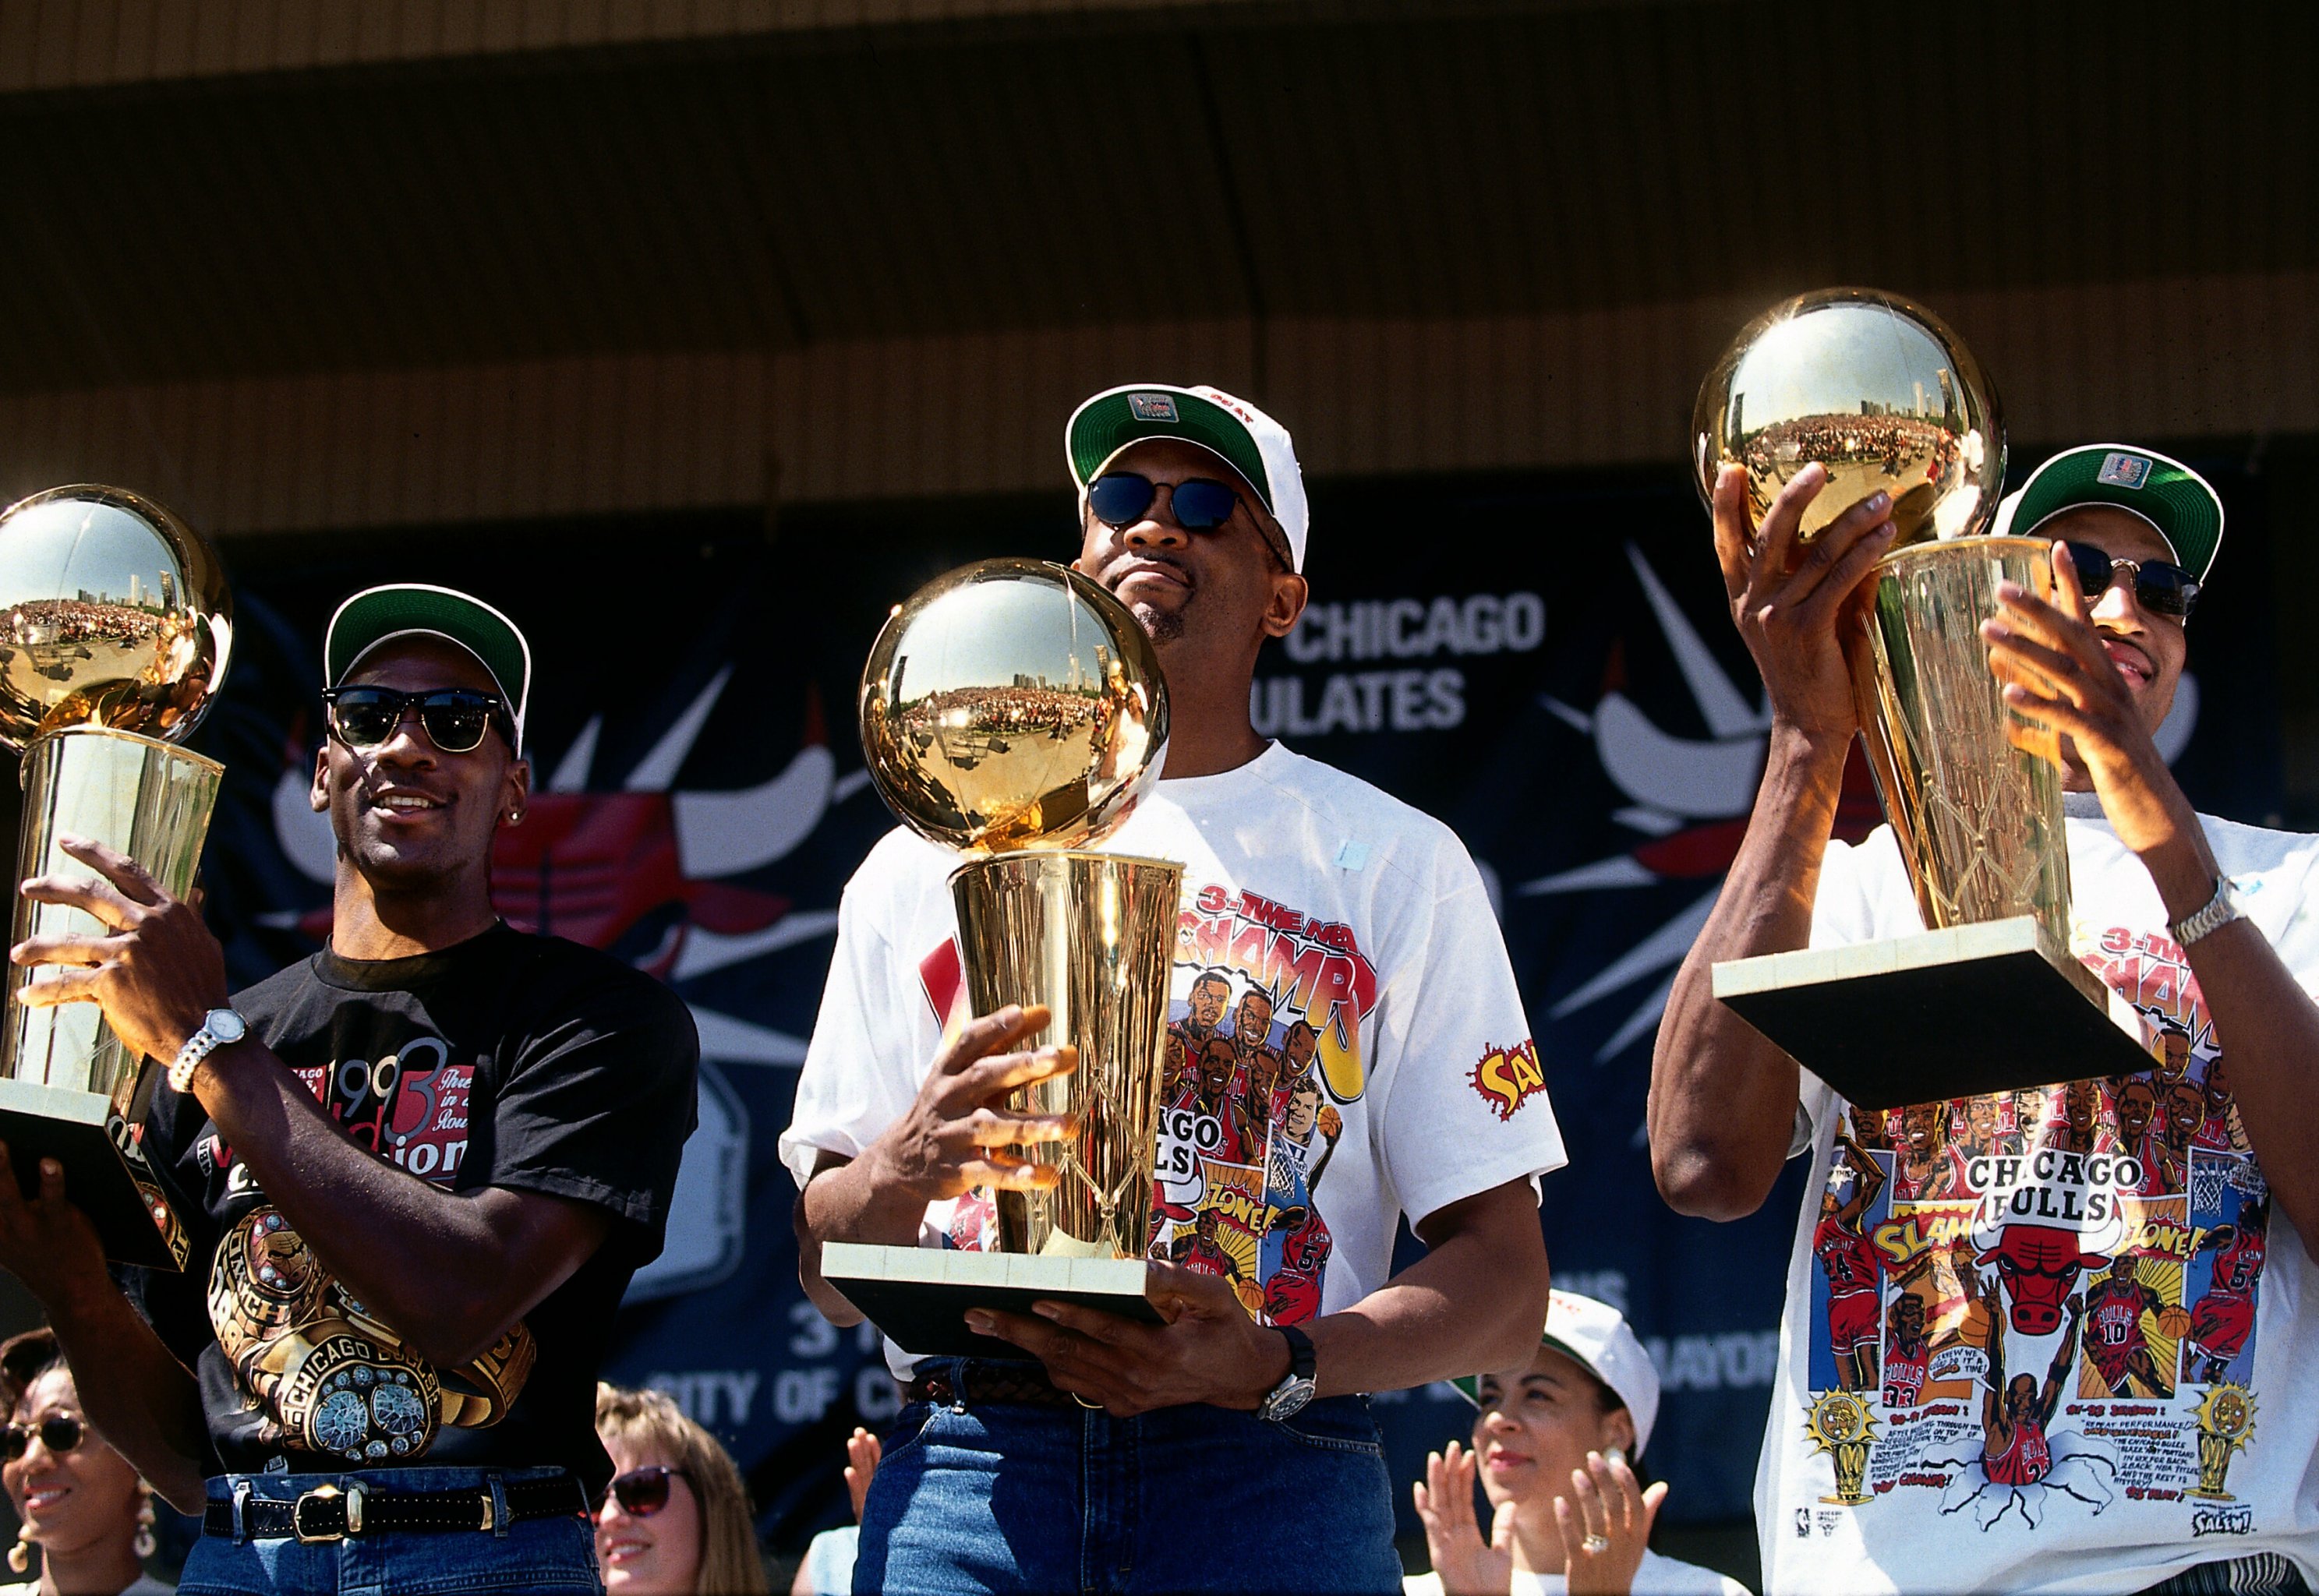 Jordan's Bulls and Kobe's Lakers: The three-peat teams Golden